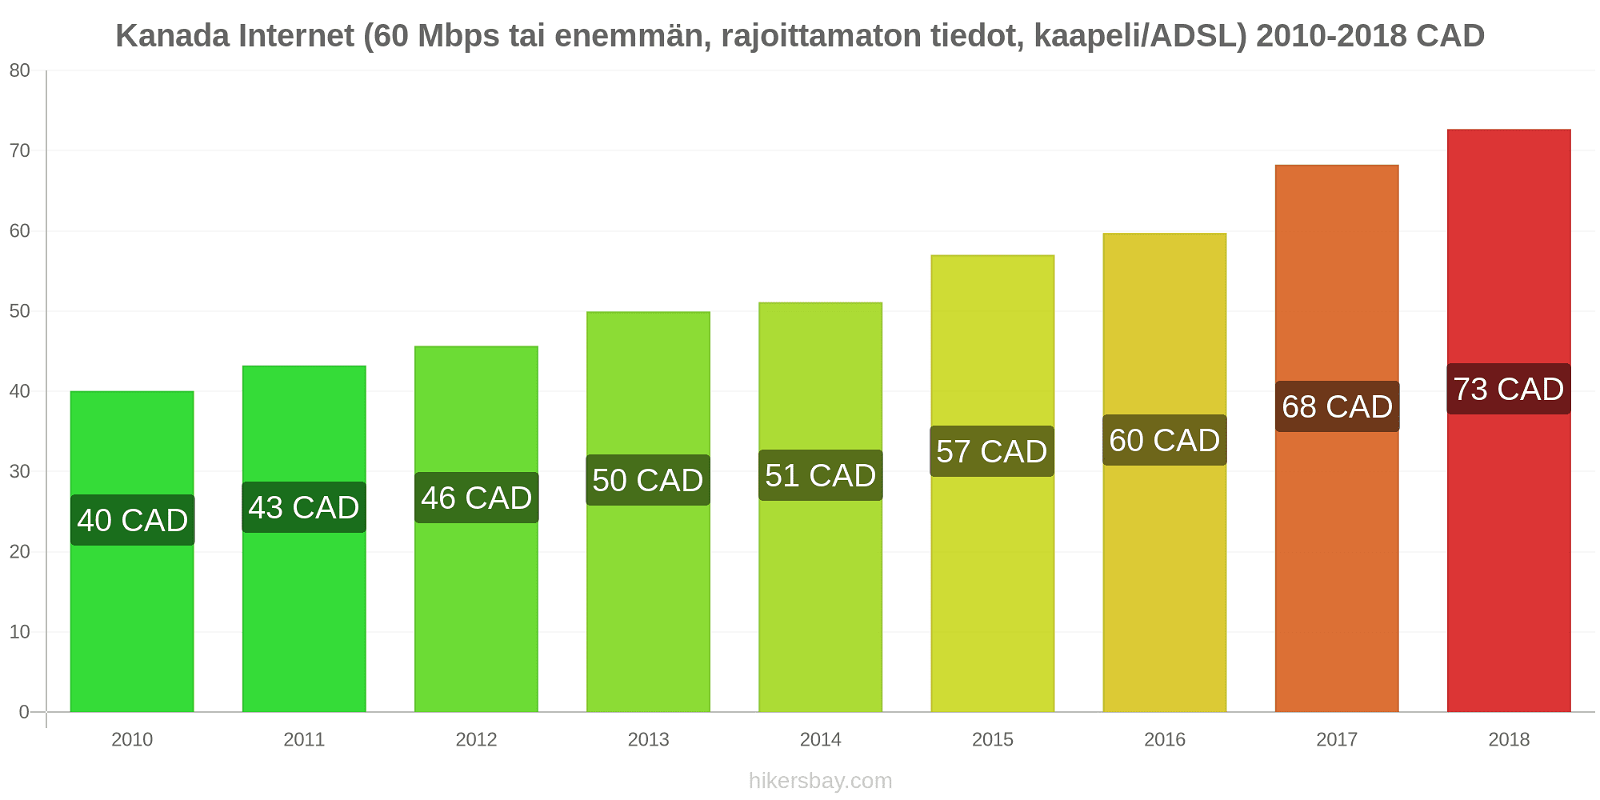 Kanada hintojen muutokset Internet (60 Mbps tai enemmän, rajoittamaton tiedot, kaapeli/ADSL) hikersbay.com